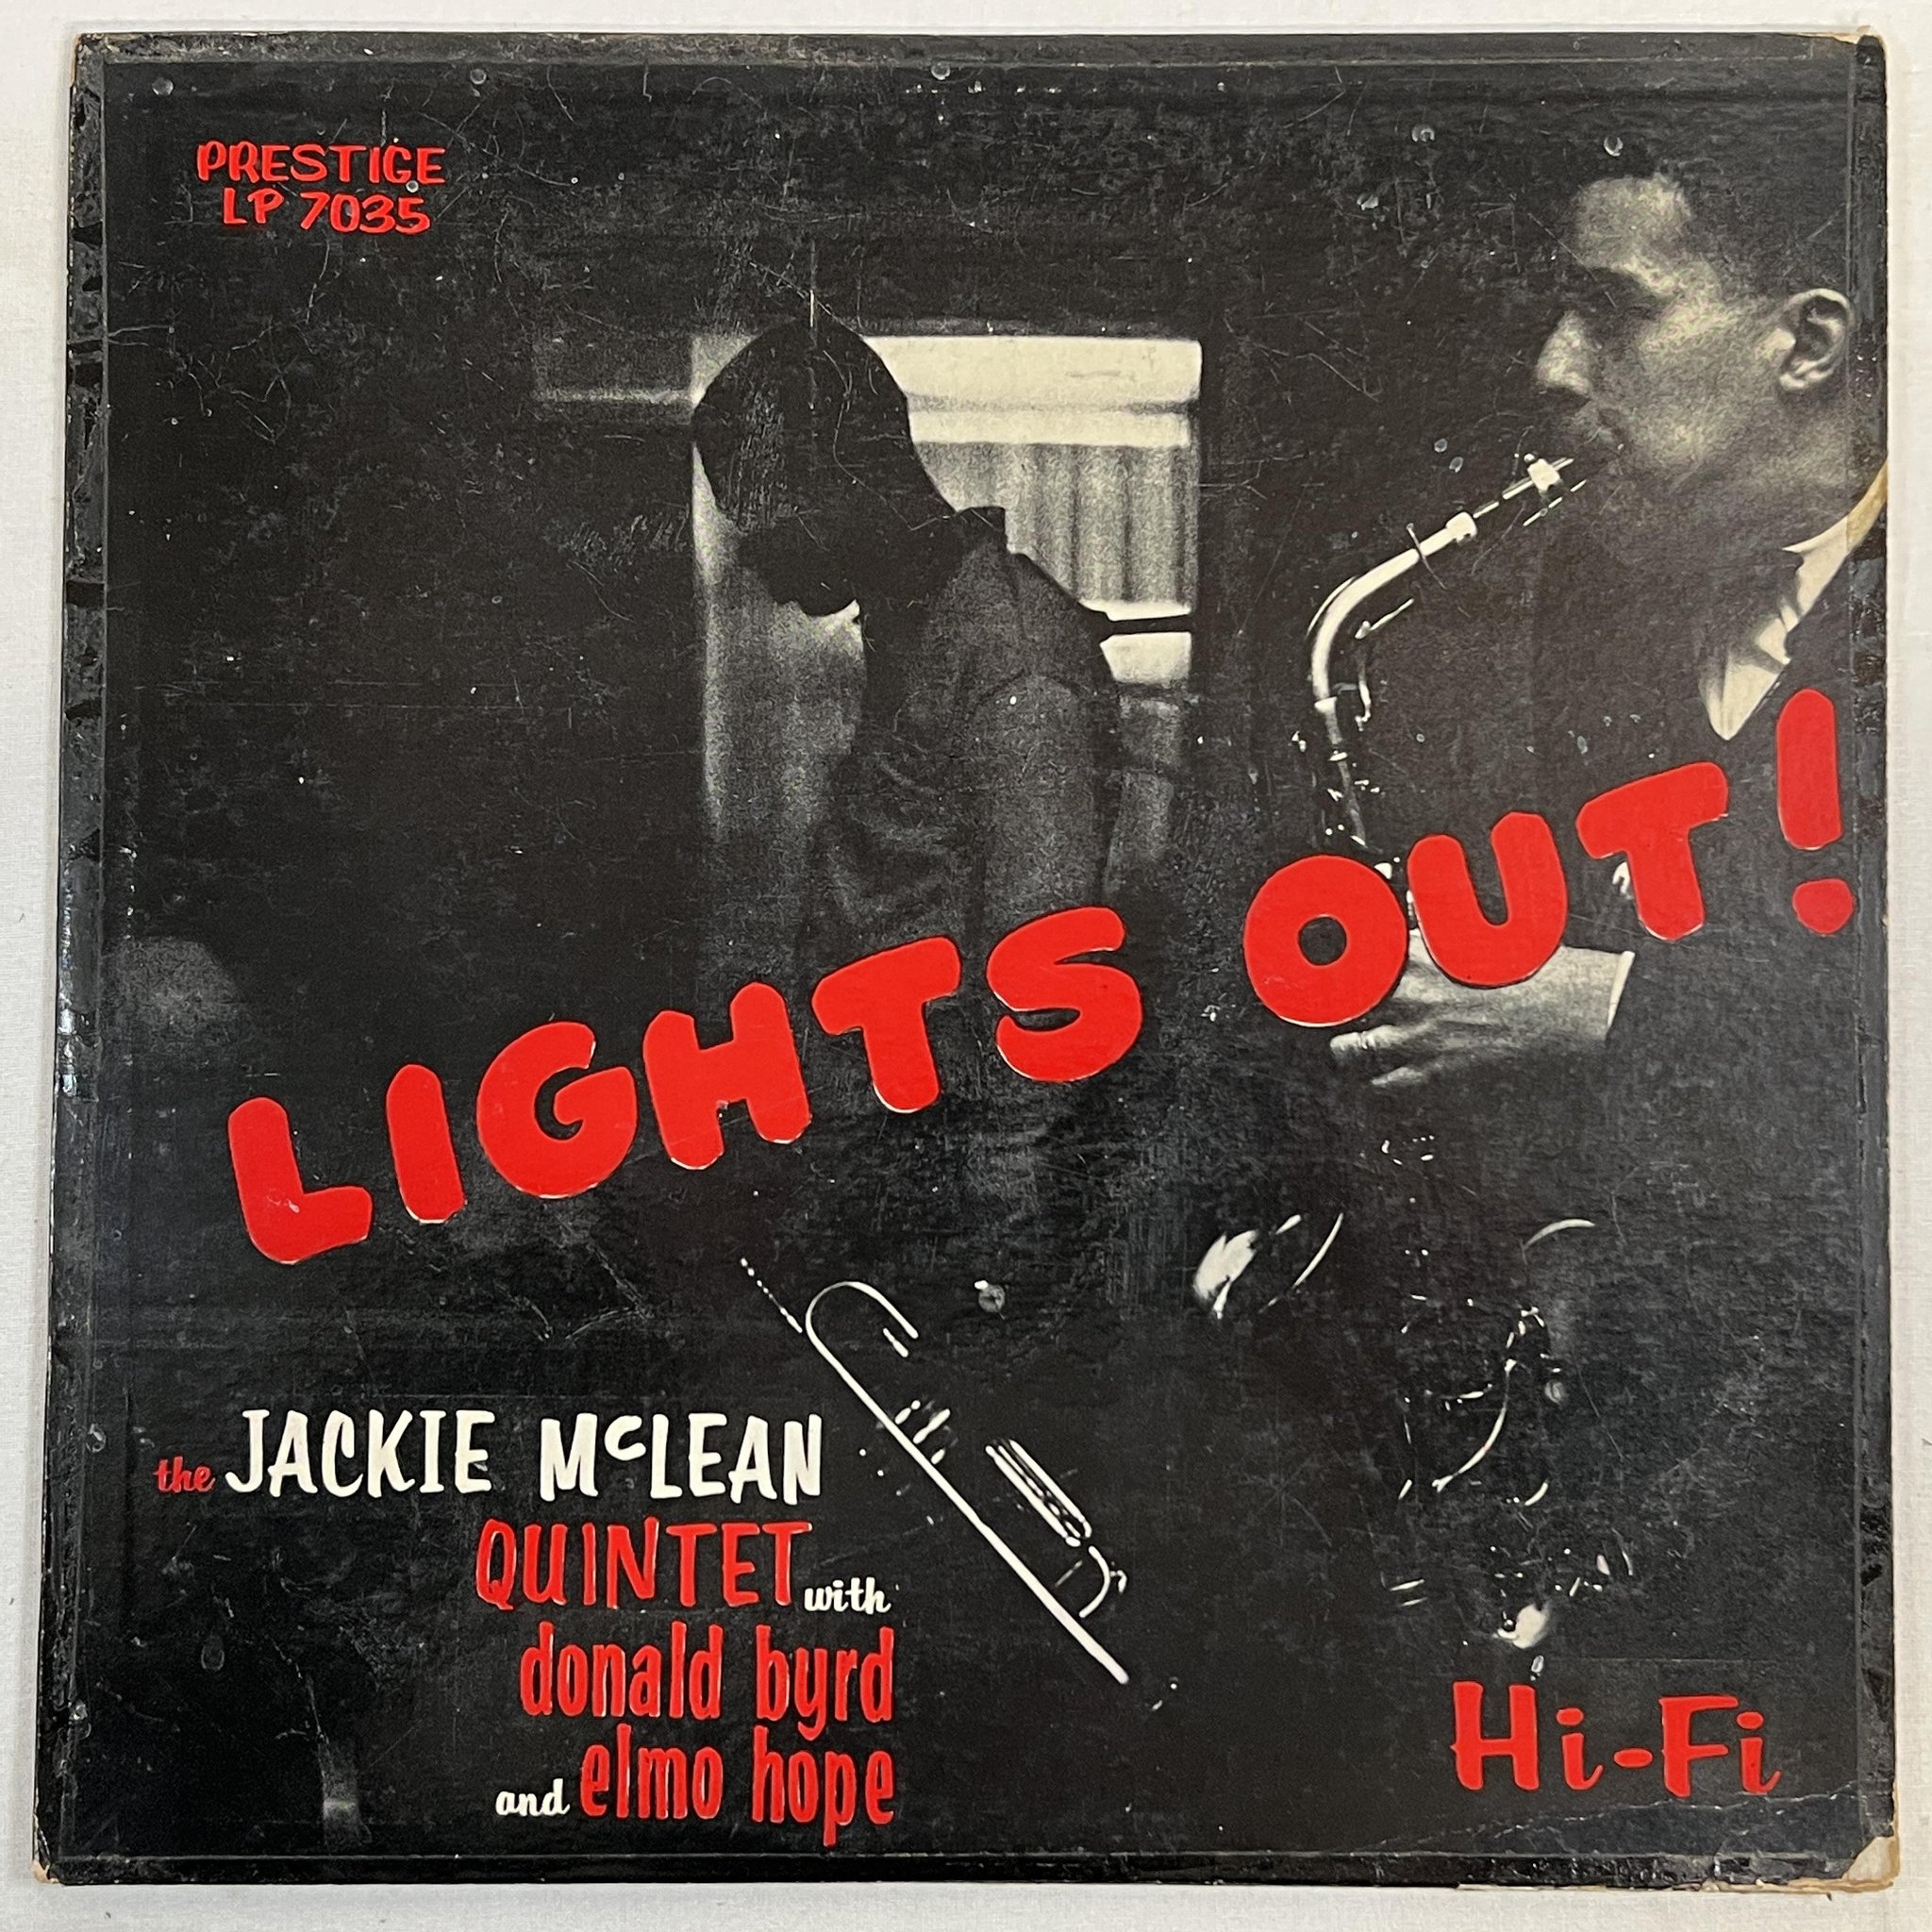 Omslagsbild för skivan JACKIE McLEAN lights out LP -56 US mono PRESTIGE PRLP 7035 446W 50TH ST NYC orig